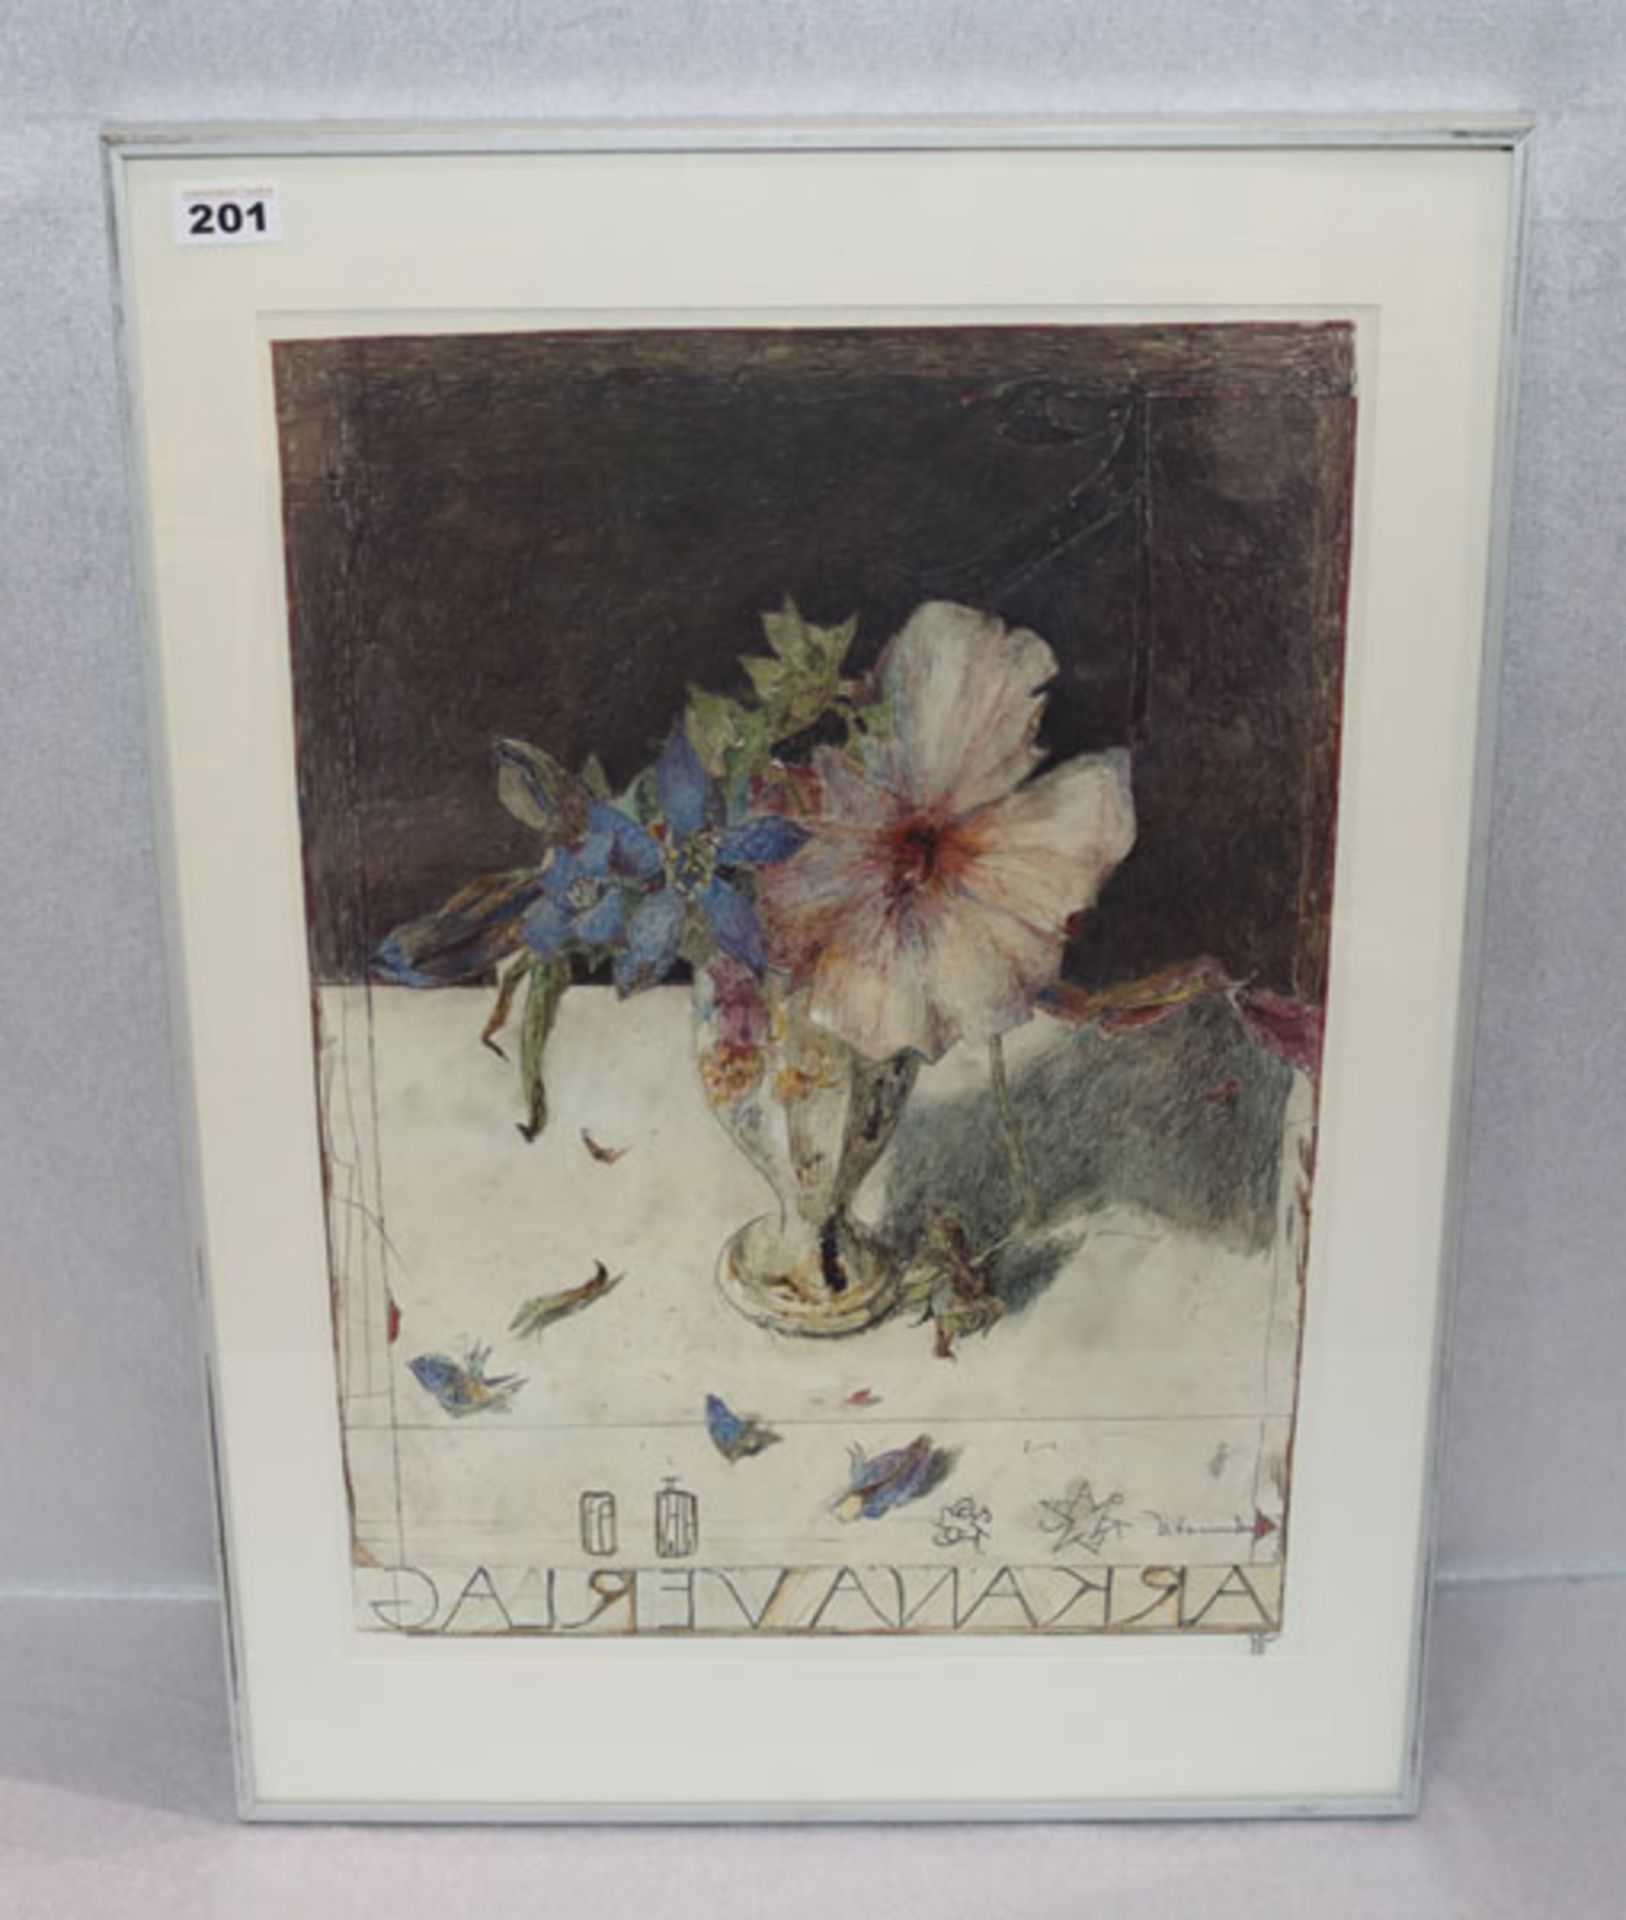 Plakat Offsetdruck 'Blumen in Vase', monogrammiert HJ für Horst Janssen, * 1929 + 1995, mit